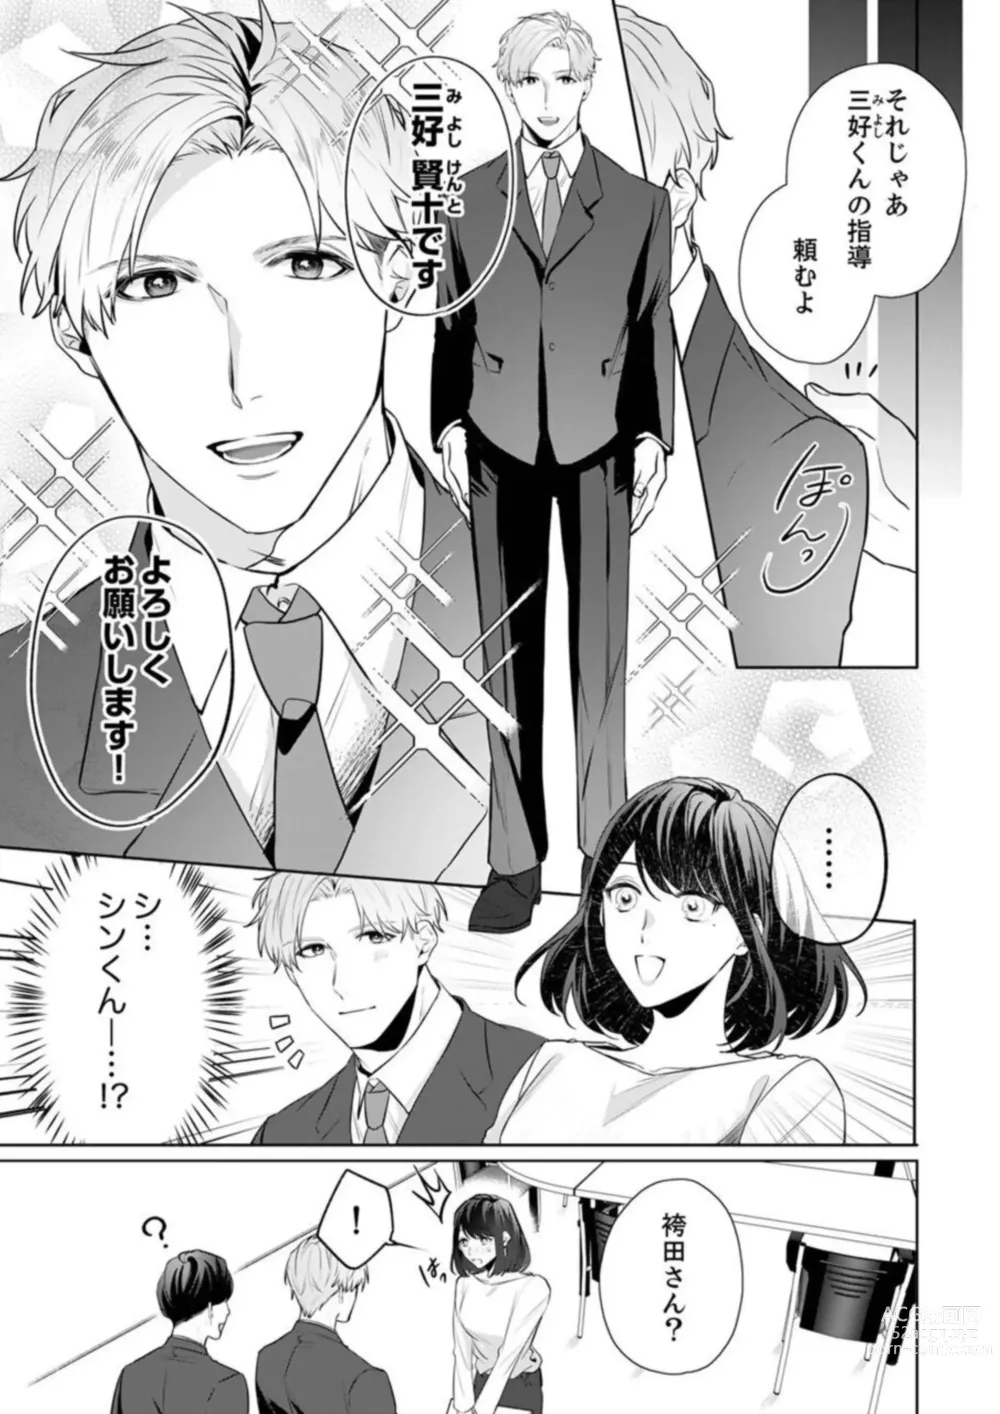 Page 7 of manga Oshi ni no Buka no Koshikudake Kisu 〜 Desuku no ue de Torotoro ni Nurete 1-2